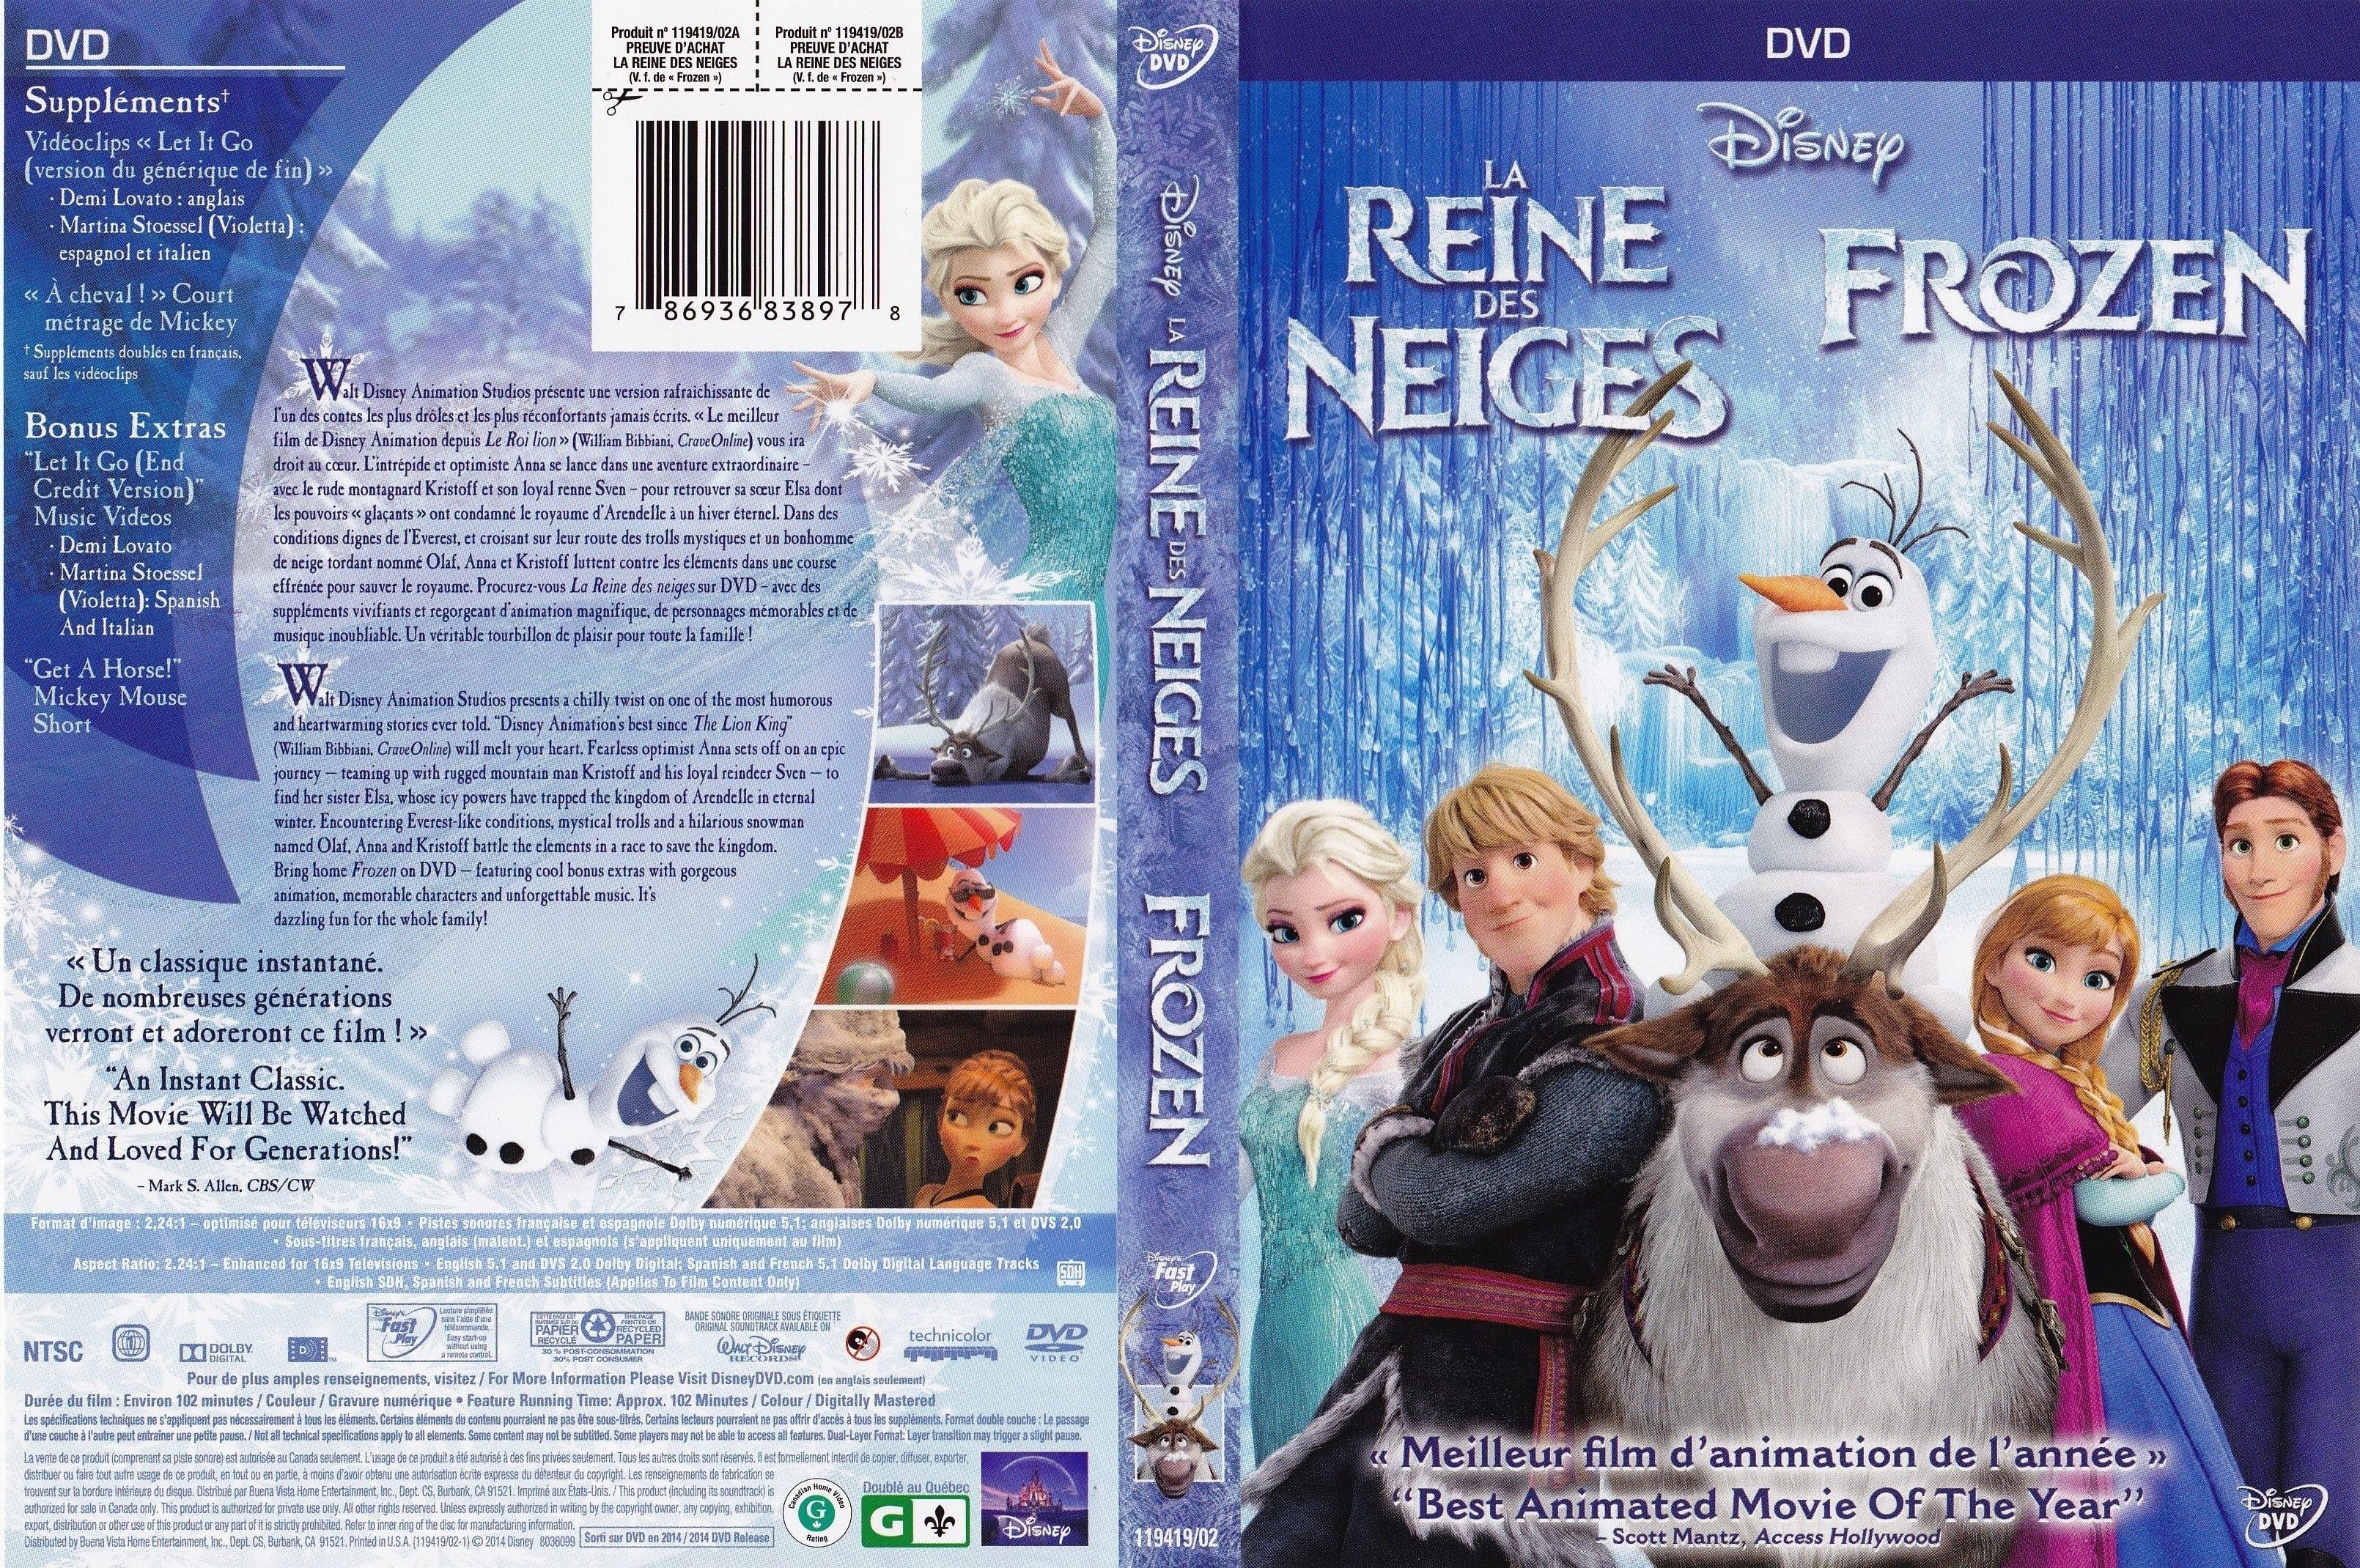 Jaquette DVD de La reine des neiges - Frozen (Canadienne) - Cinéma Passion